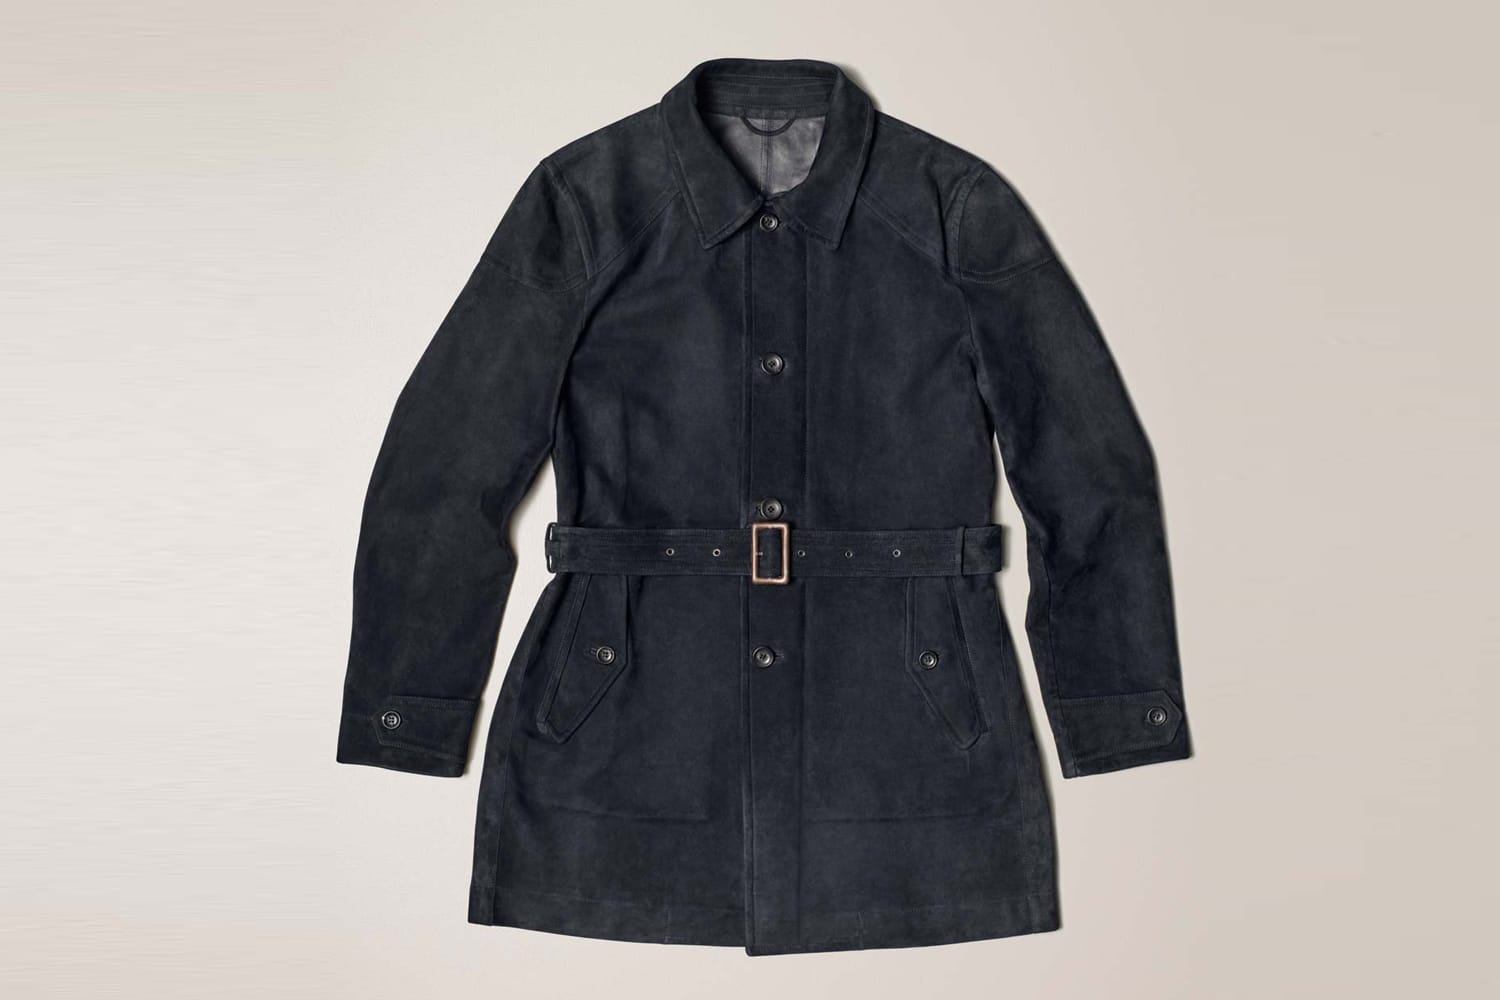 Passend zum edlen Rennschlitten trägt Man(n) seinen Carcoat (von Connolly um 4.100 Euro) selbstverständlich aus Veloursleder.